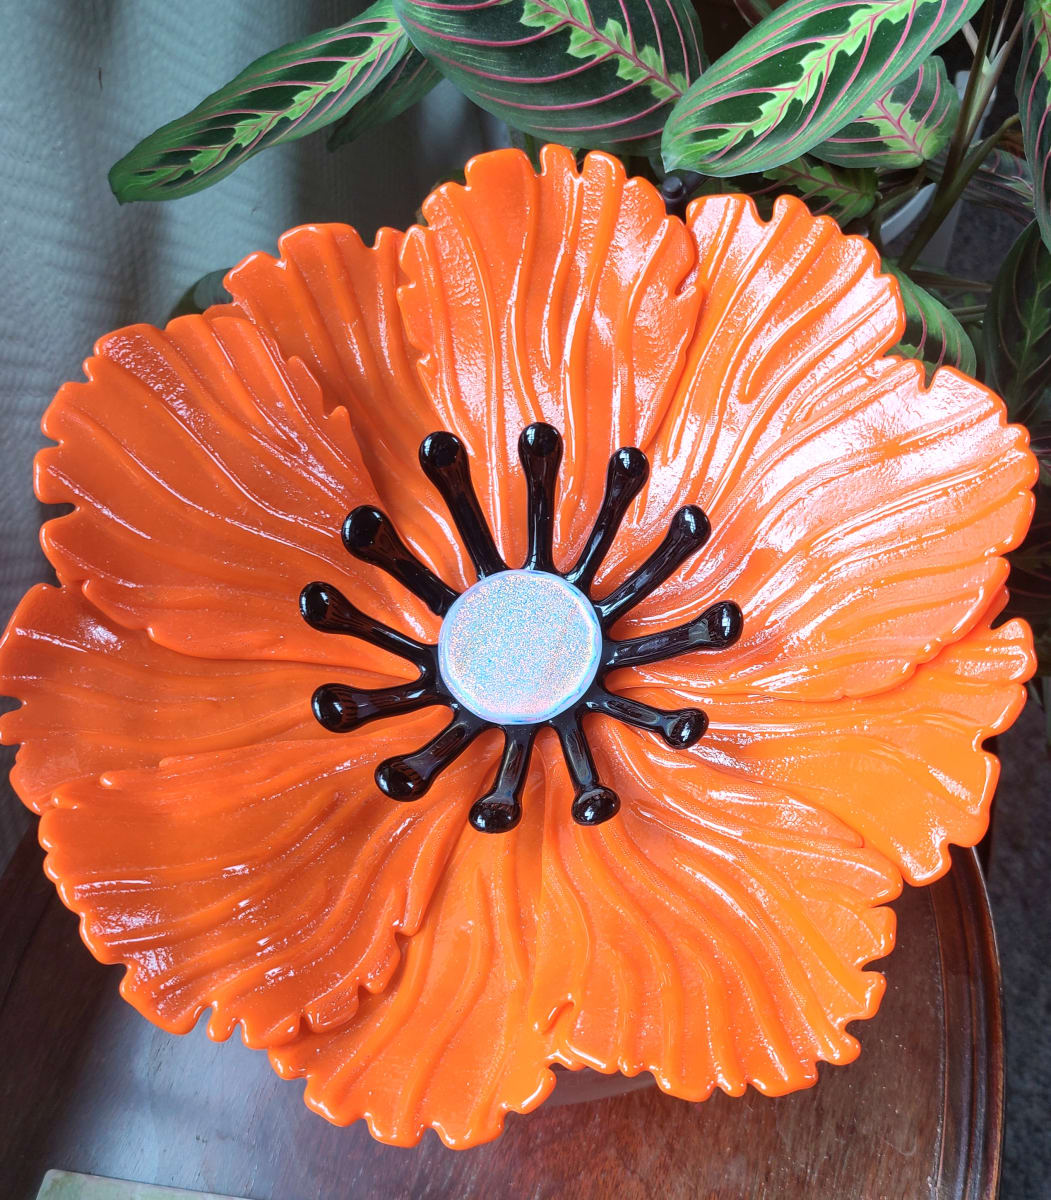 Garden Flower-Orange with Black Stamens and Dichroic Center by Kathy Kollenburn 